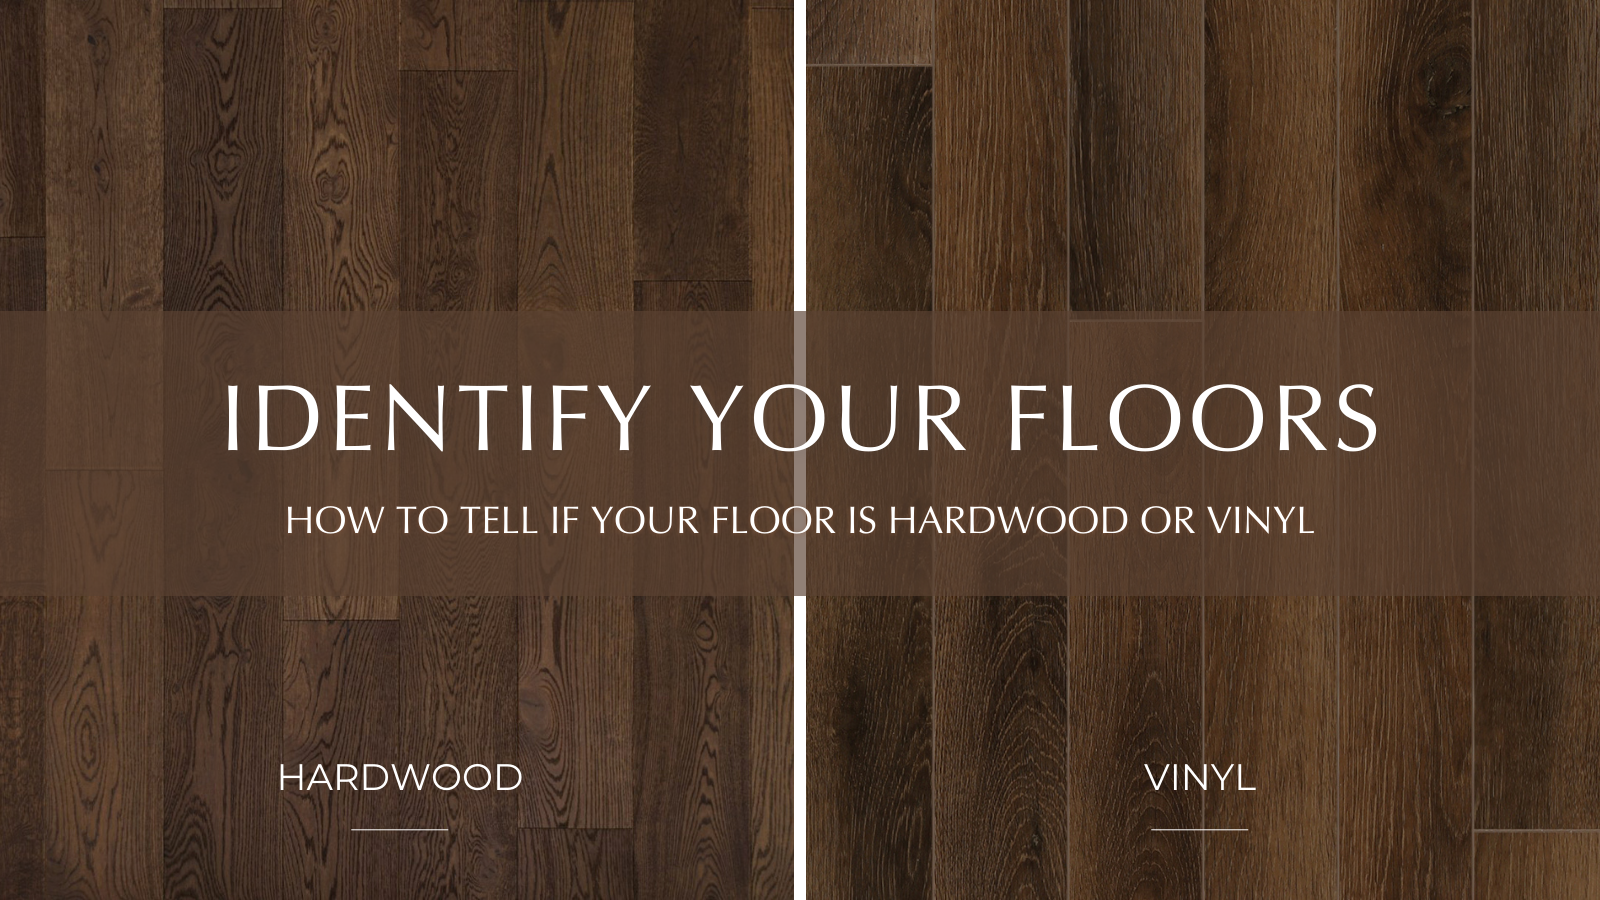 Vinyl vs linoleum Flooring  Comparing Vinyl and Linoleum Flooring